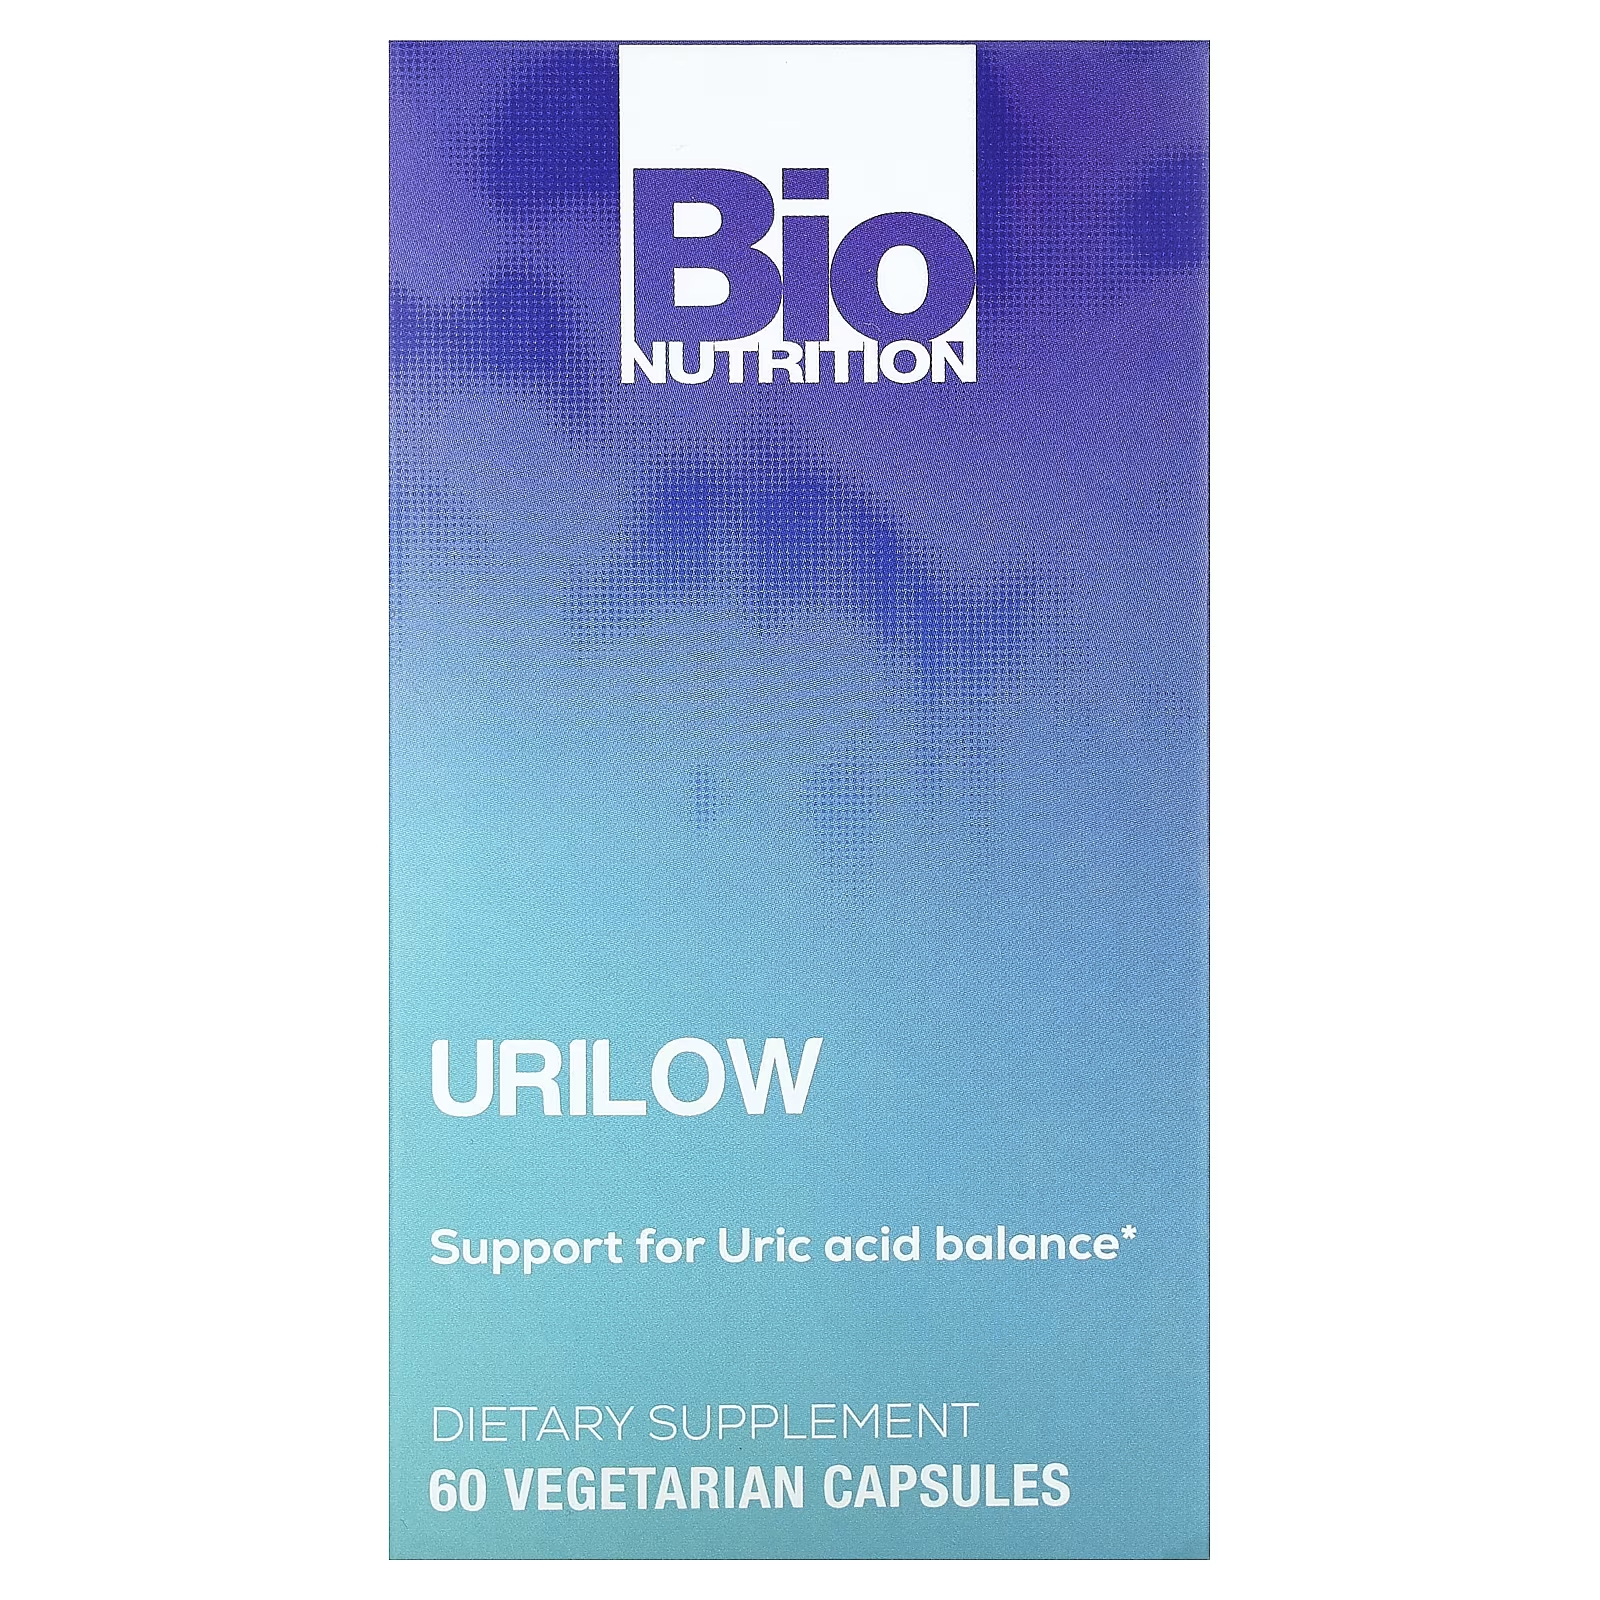 Пищевая добавка Bio Nutrition Urilow, 60 капсул кефирный продукт bio баланс classic fit с пробиотиком 0 1% 930 г